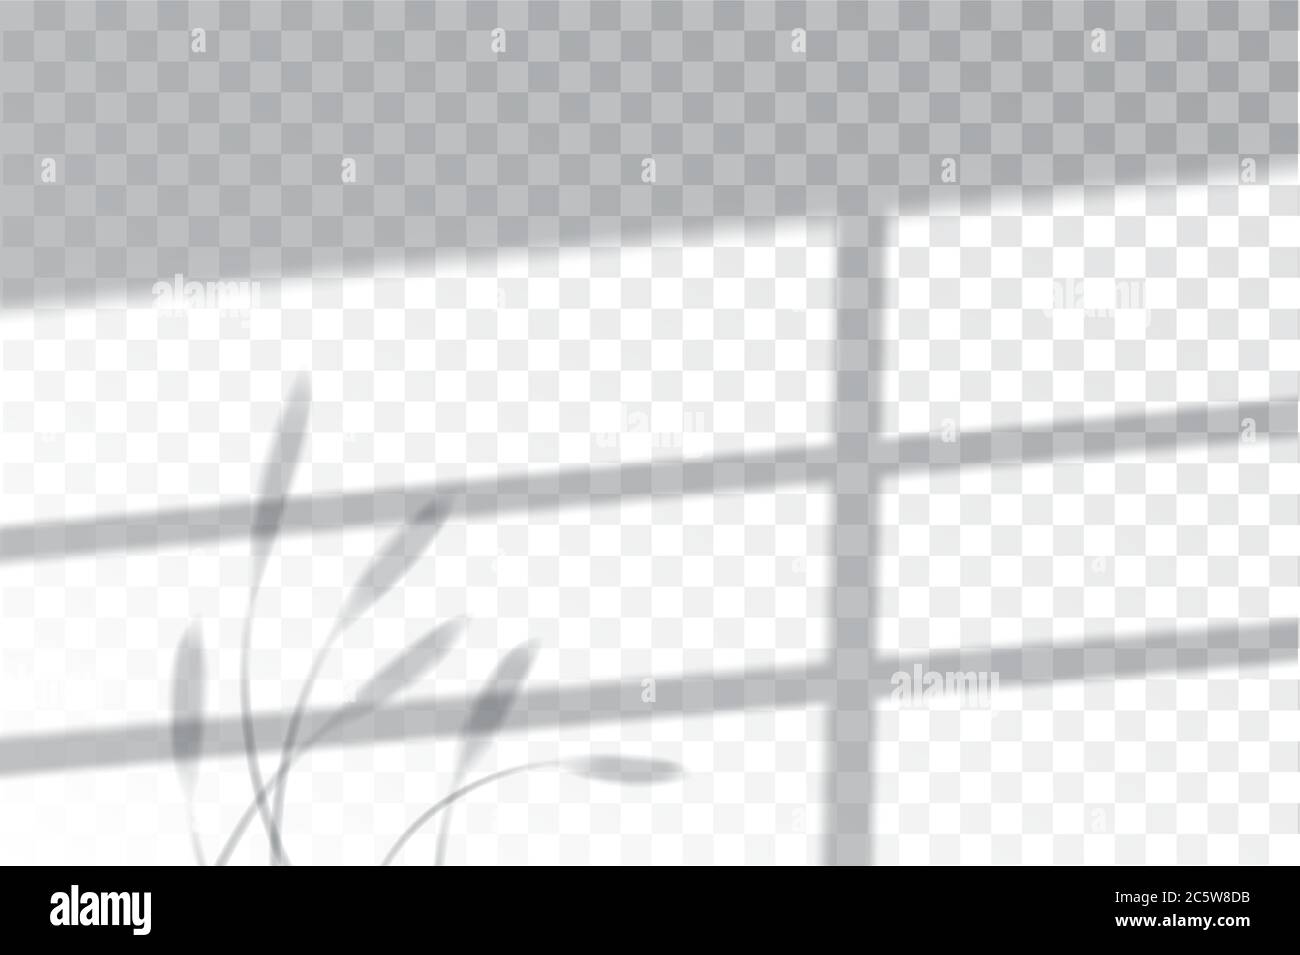 Ombra, effetti di sovrapposizione mock-up, cornice finestra e foglia di piante, luce naturale, illustrazione vettoriale. Illustrazione Vettoriale